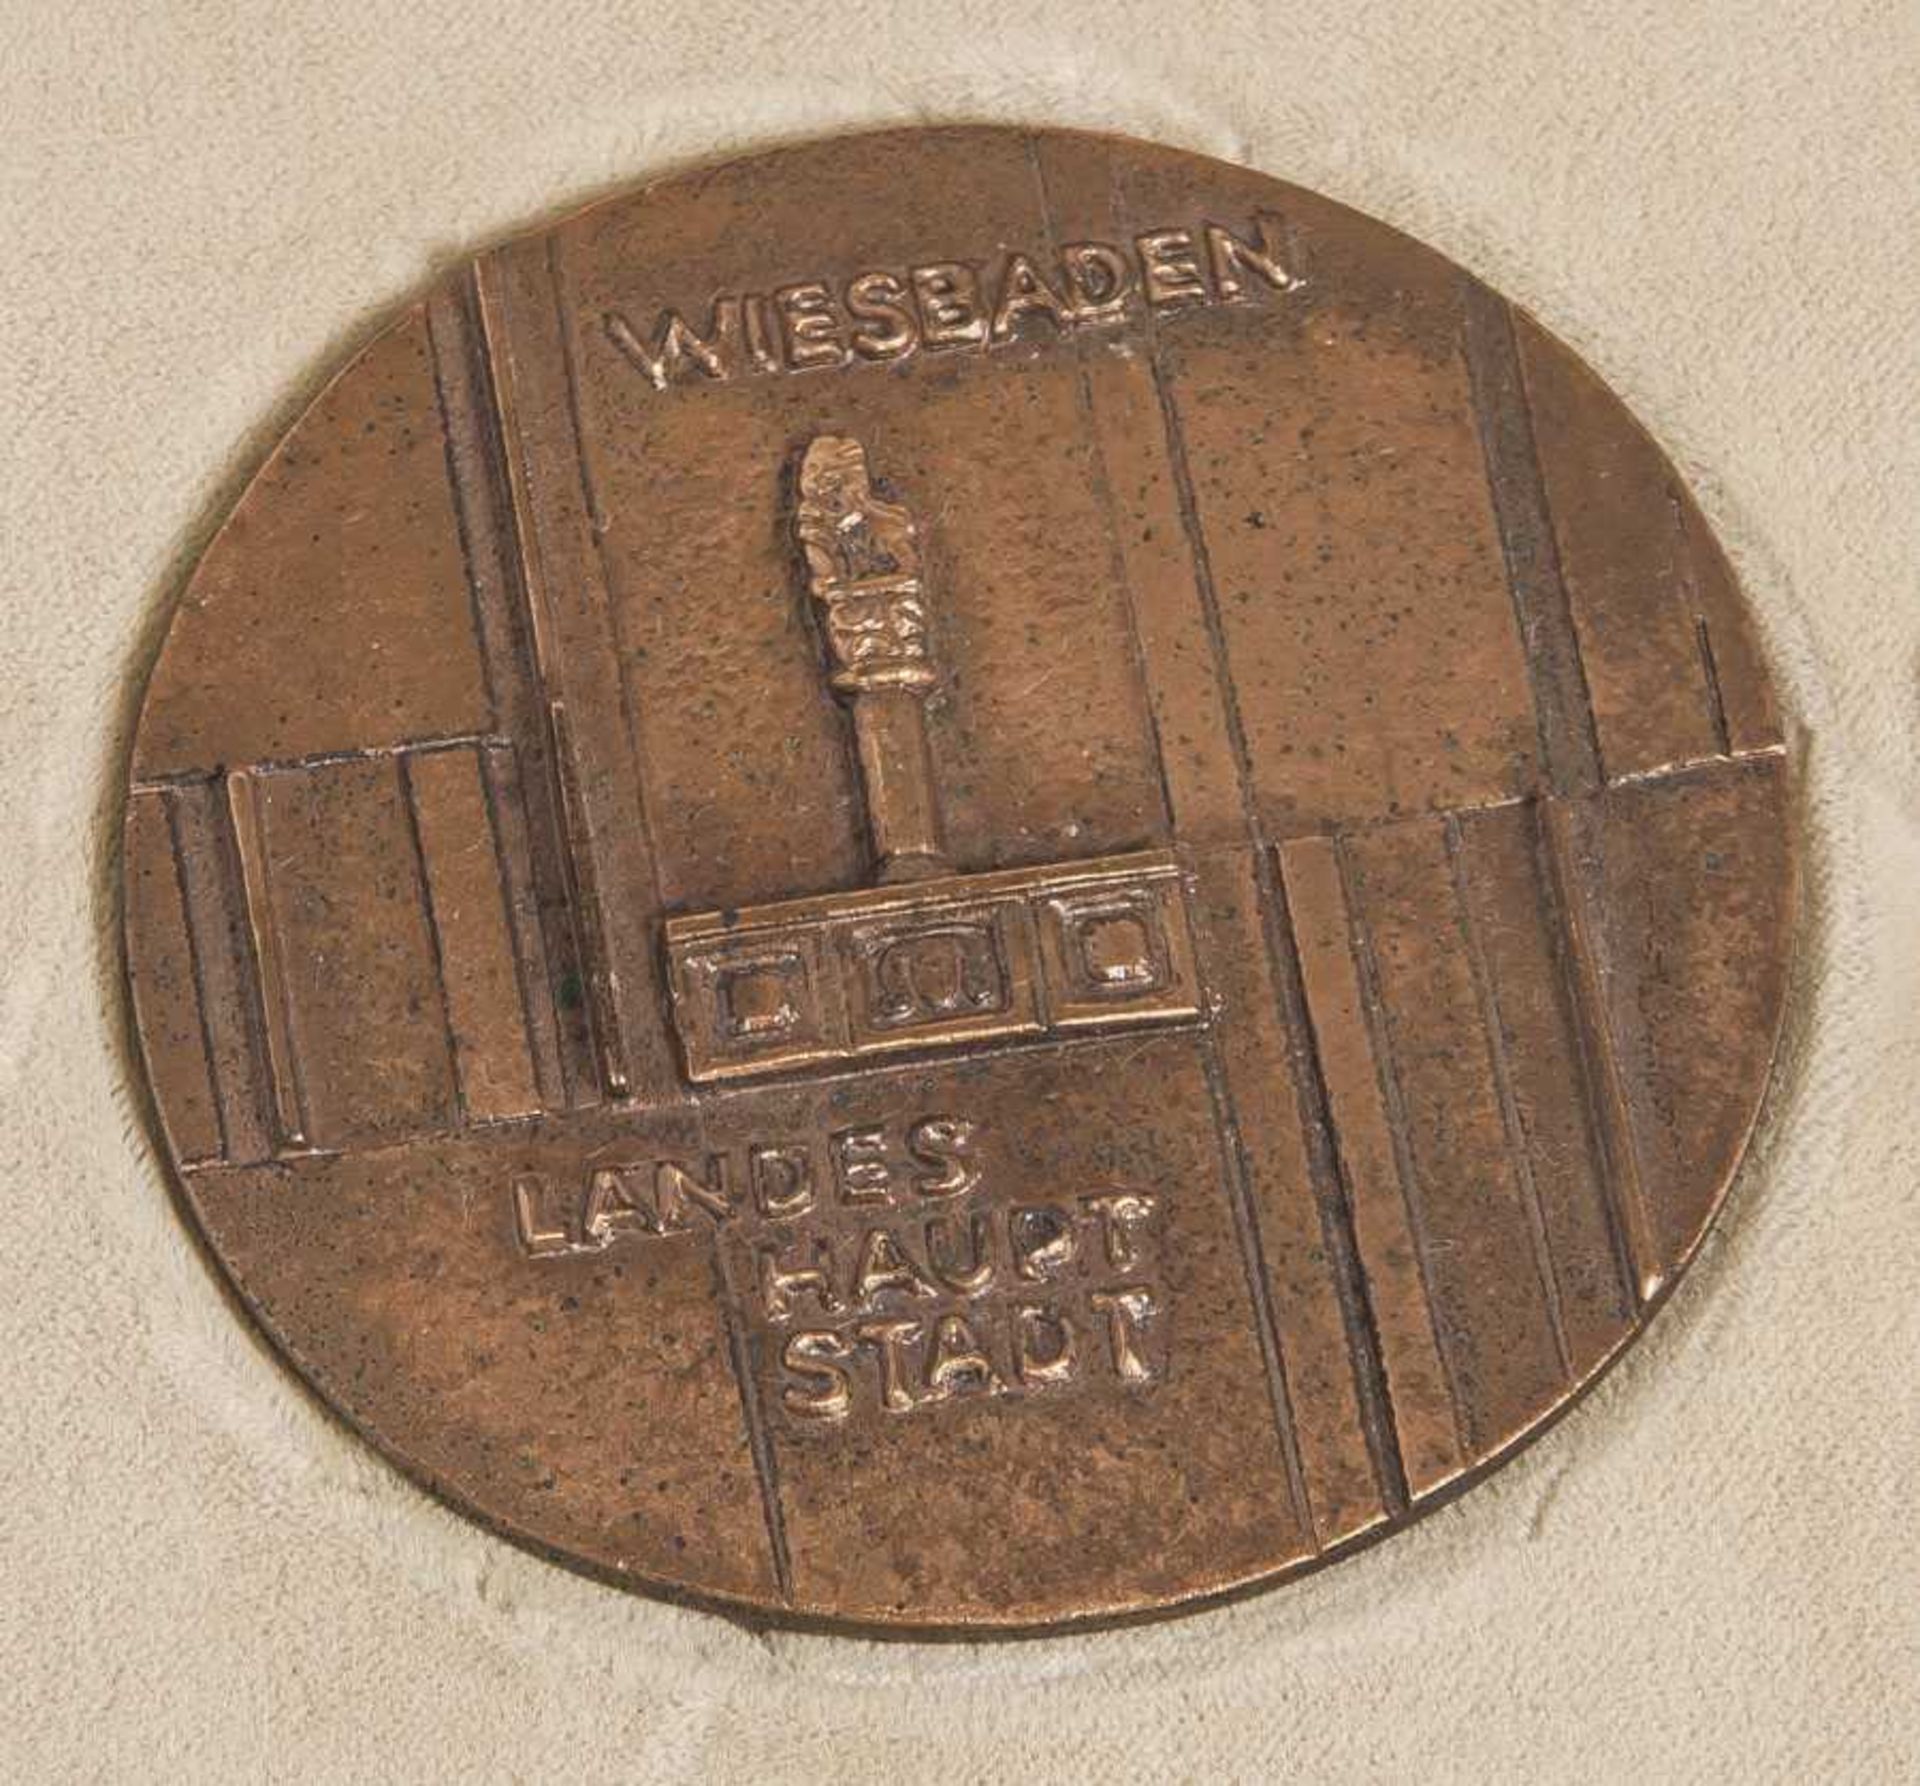 Verdienstmedaille des Landes Hessen, Bronze, "für besondere Verdienste", LandeshauptstadtWiesbaden